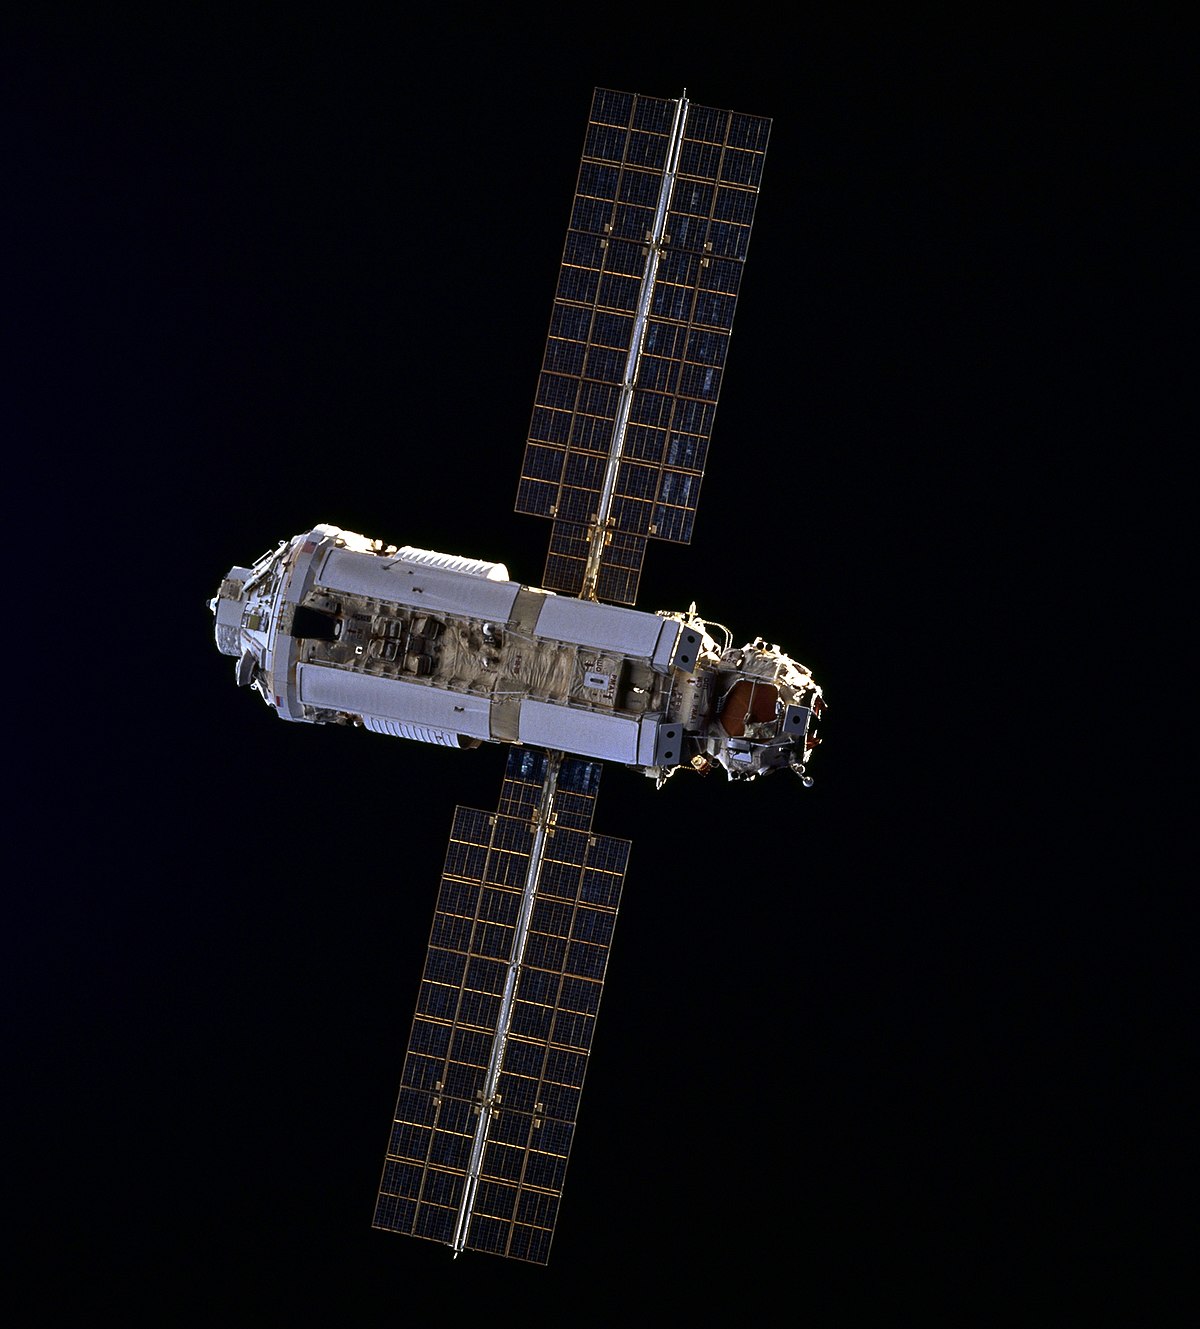 Zarya as seen in 1998. Image by NASA